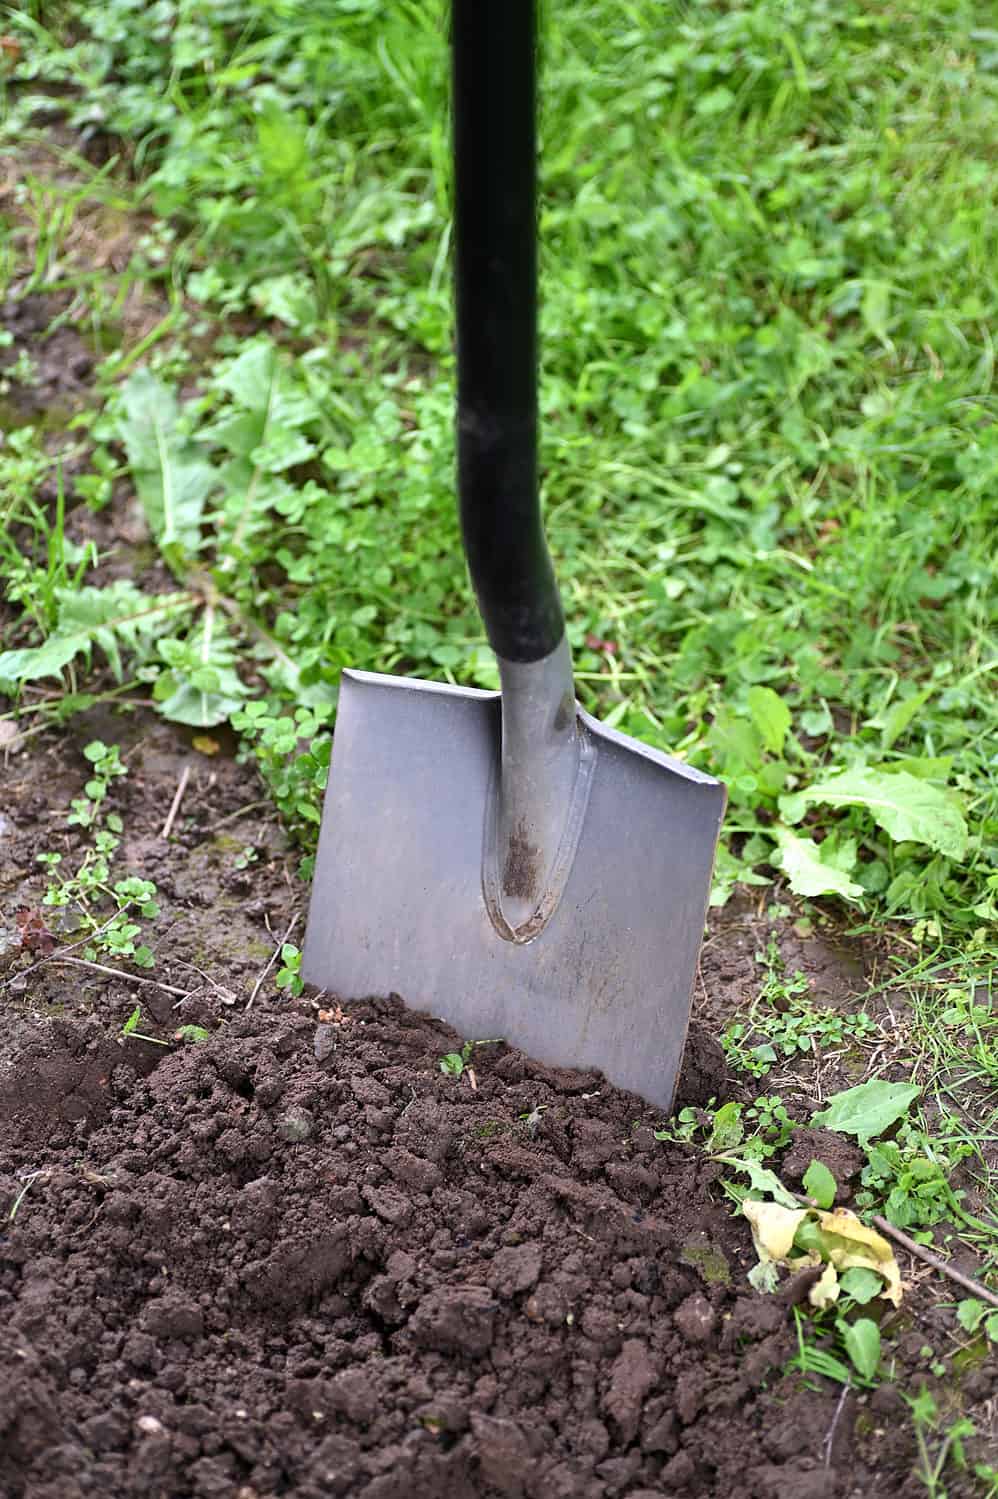 Shovel in freshly turned dirt in a garden